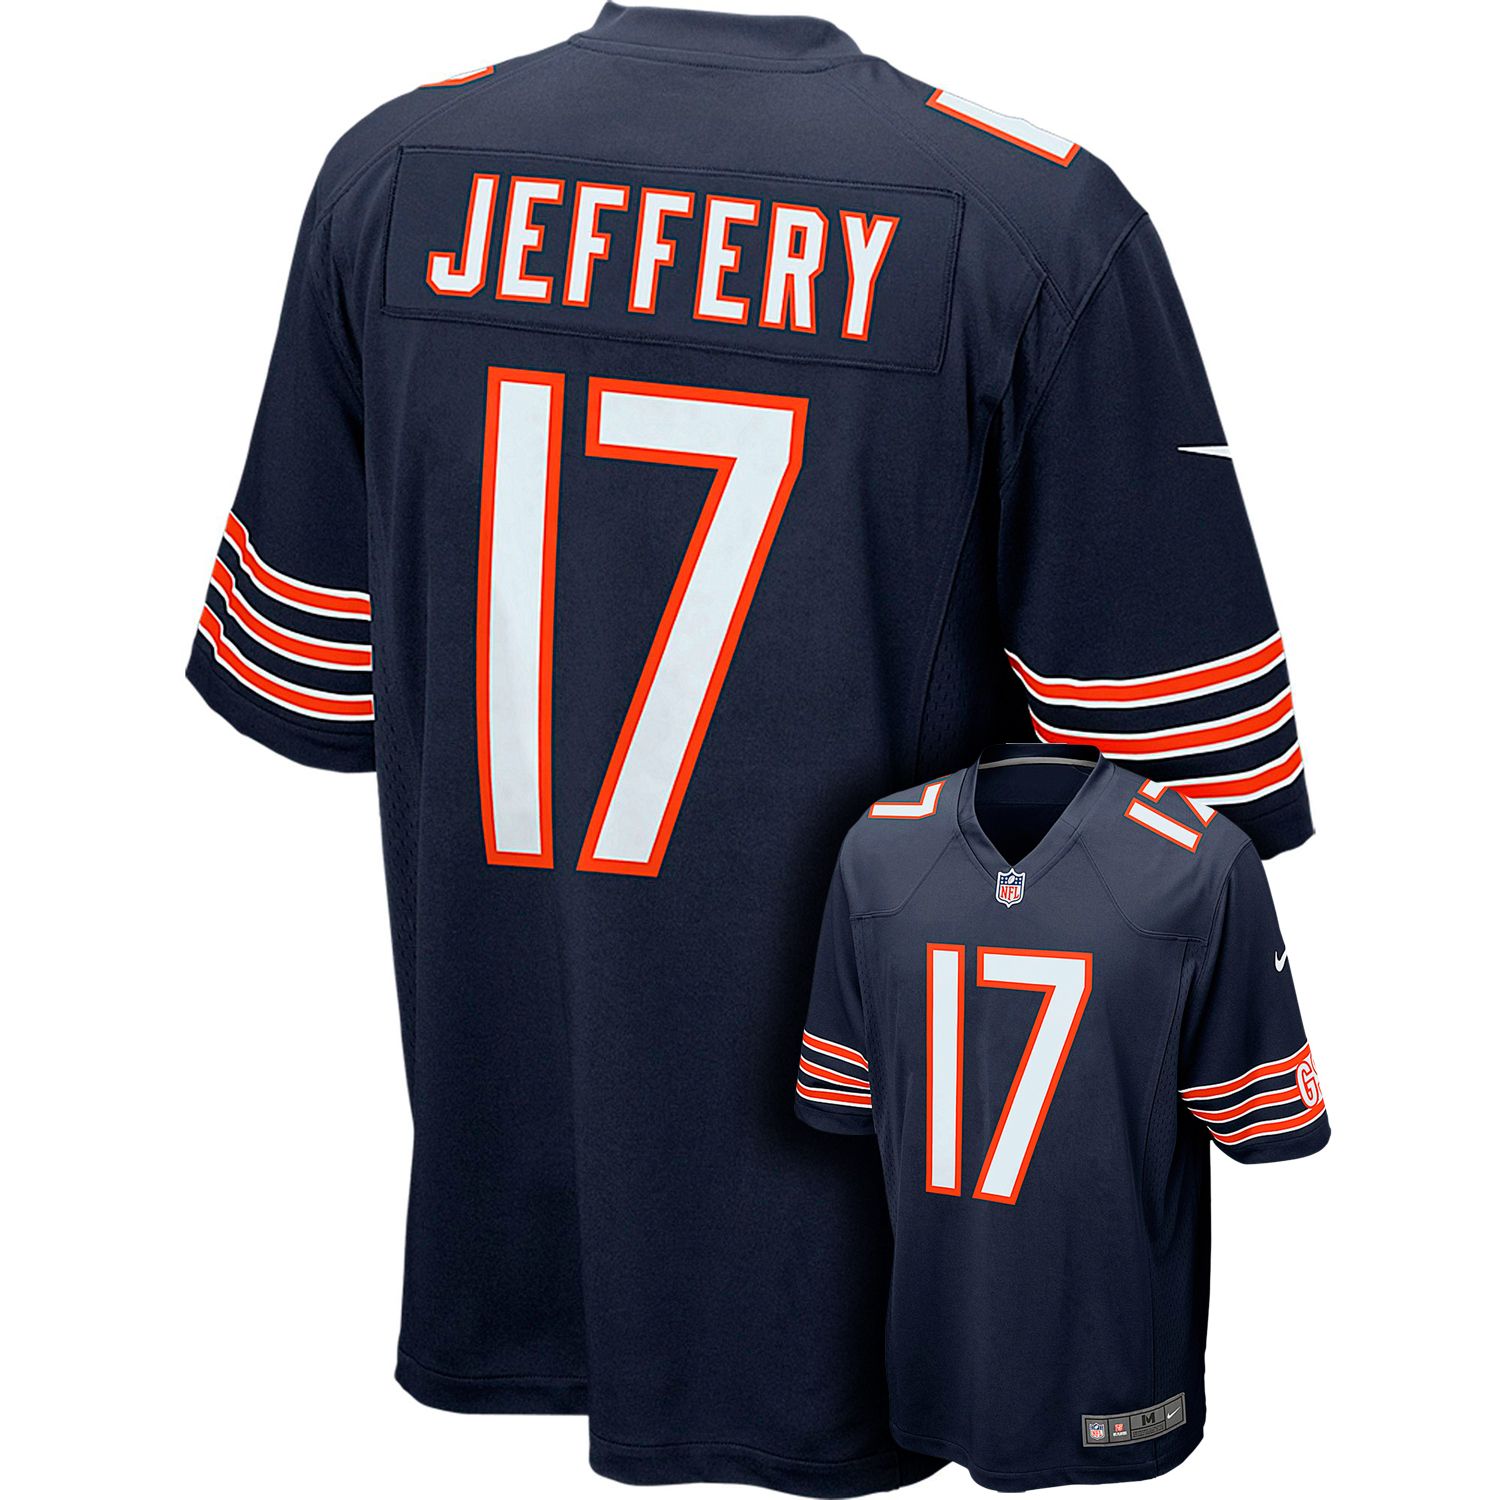 jeffery jersey bears